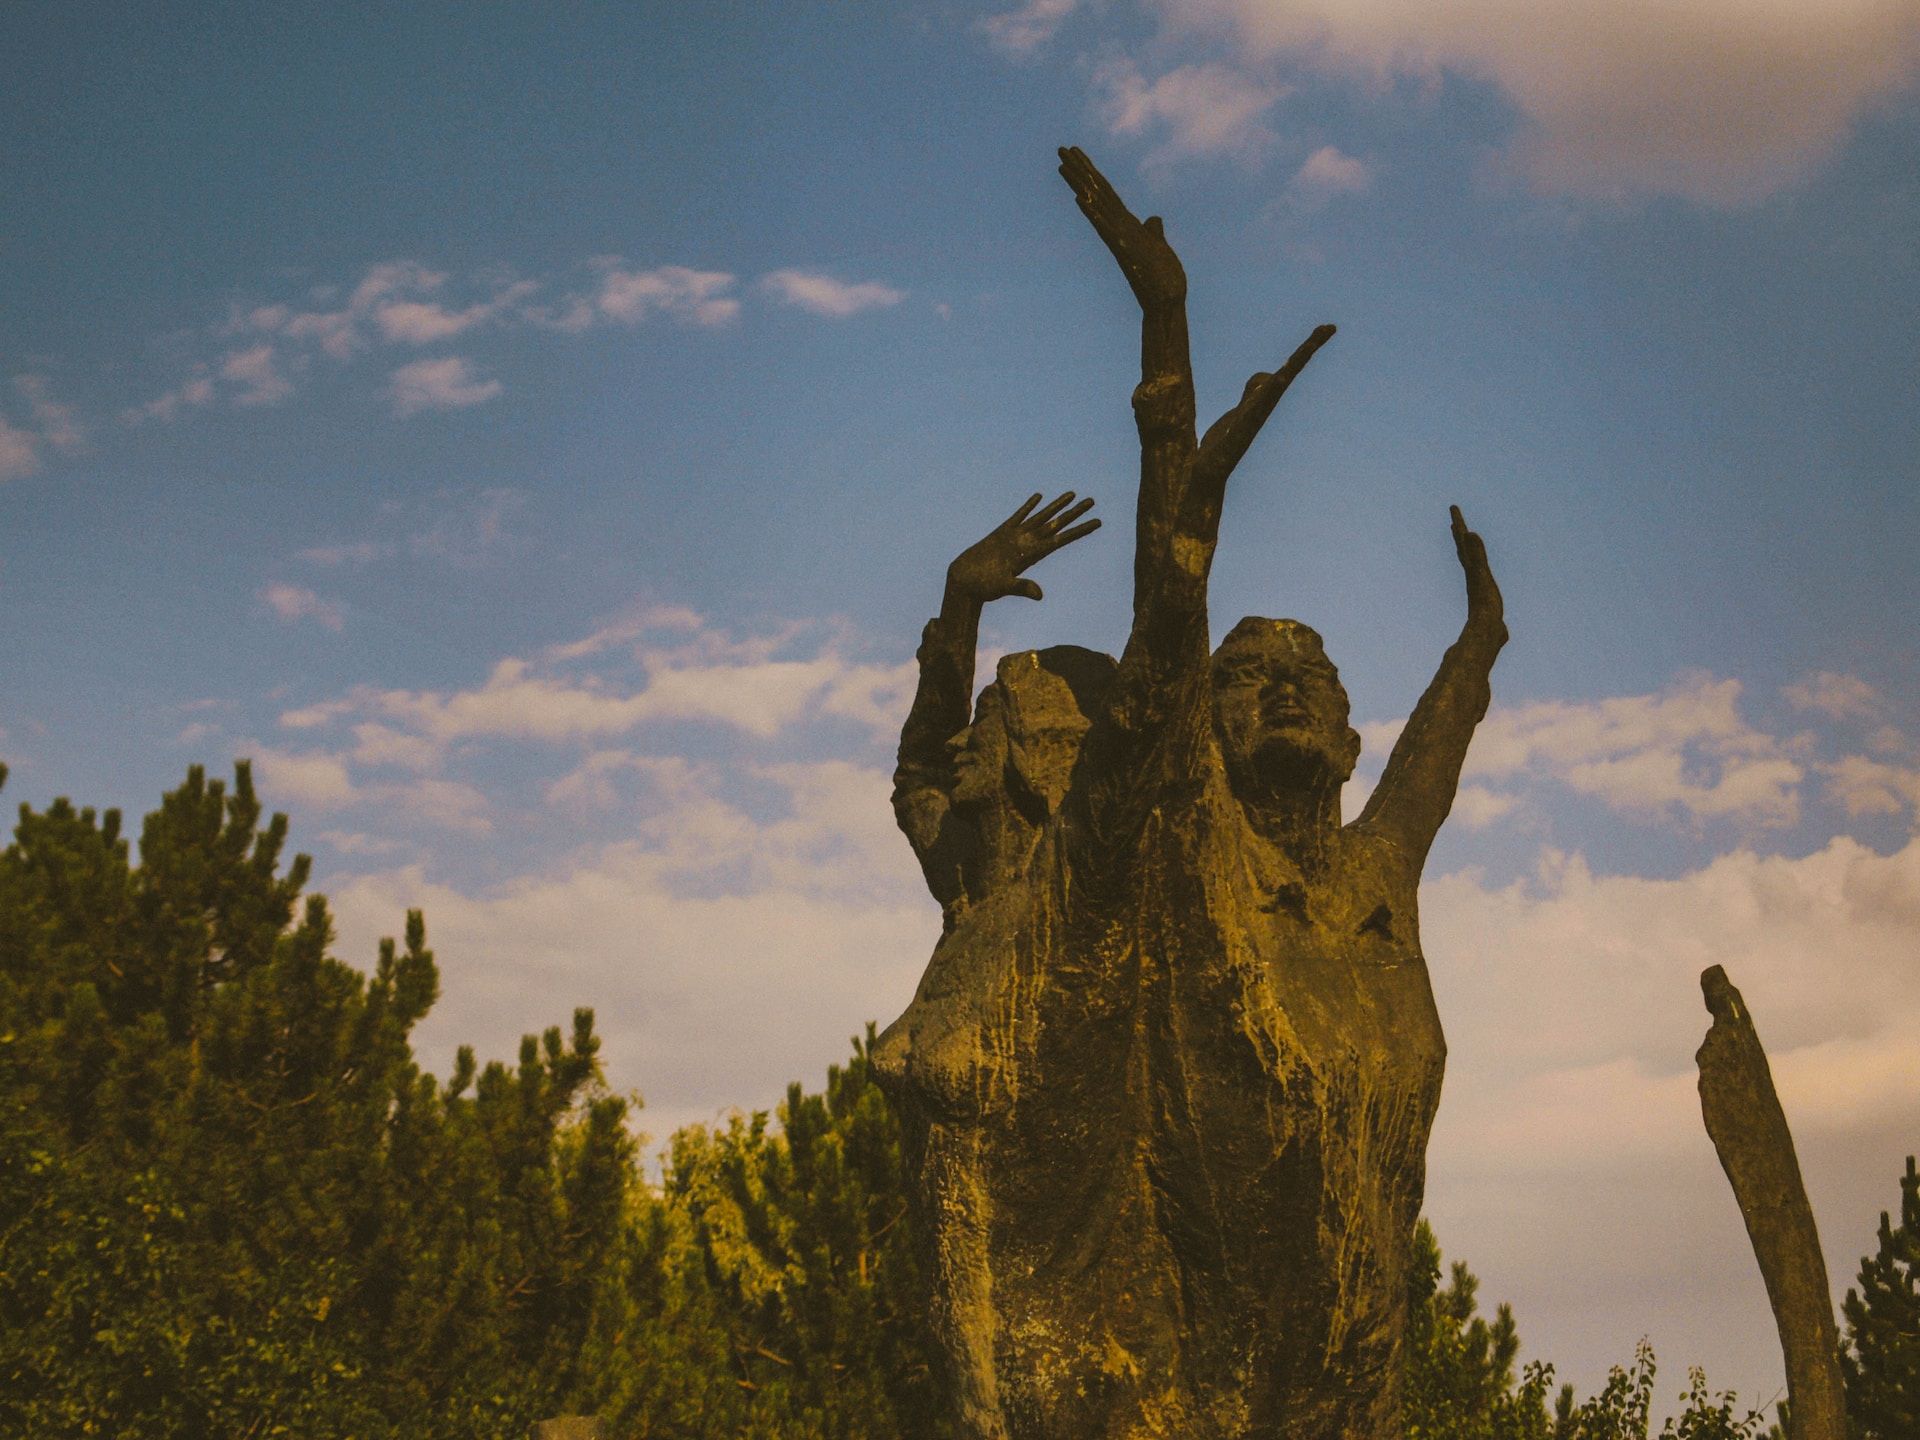 étrange sculpture de deux personnes levant les bras au ciel dans la forêt - Photo by Ramazan Tokay on https://unsplash.com/photos/8Mv47i4a6UI